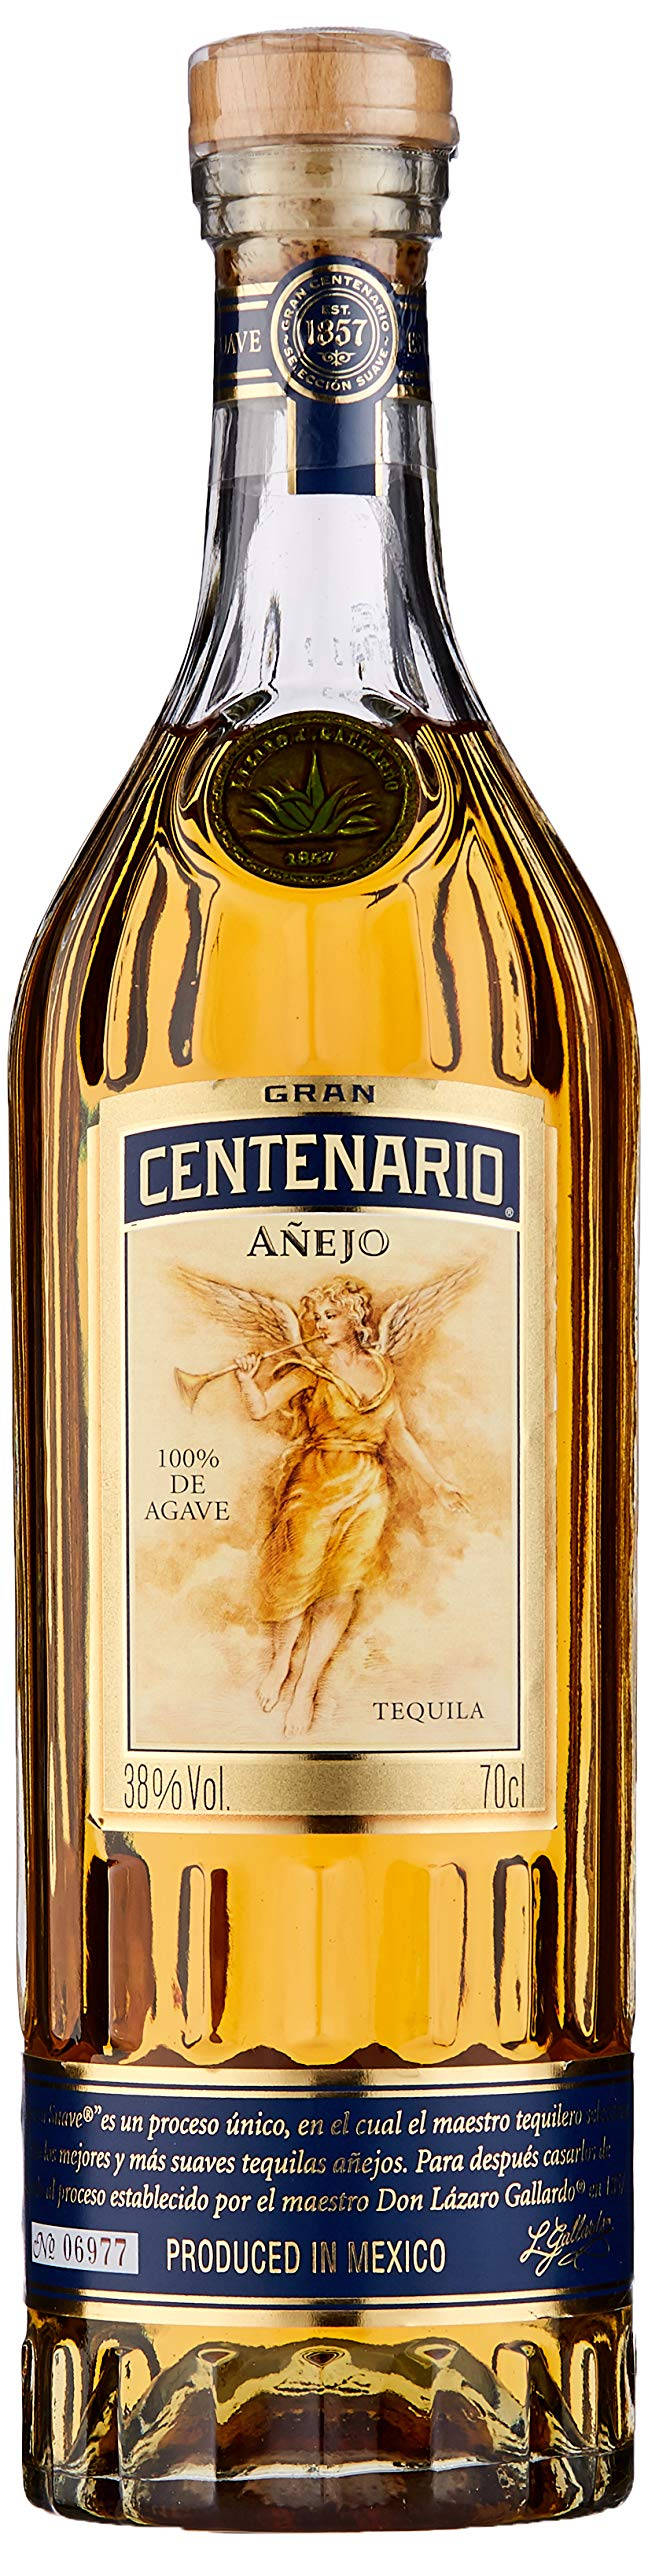 Grancentenario Tequila Añejo-flaska Wallpaper